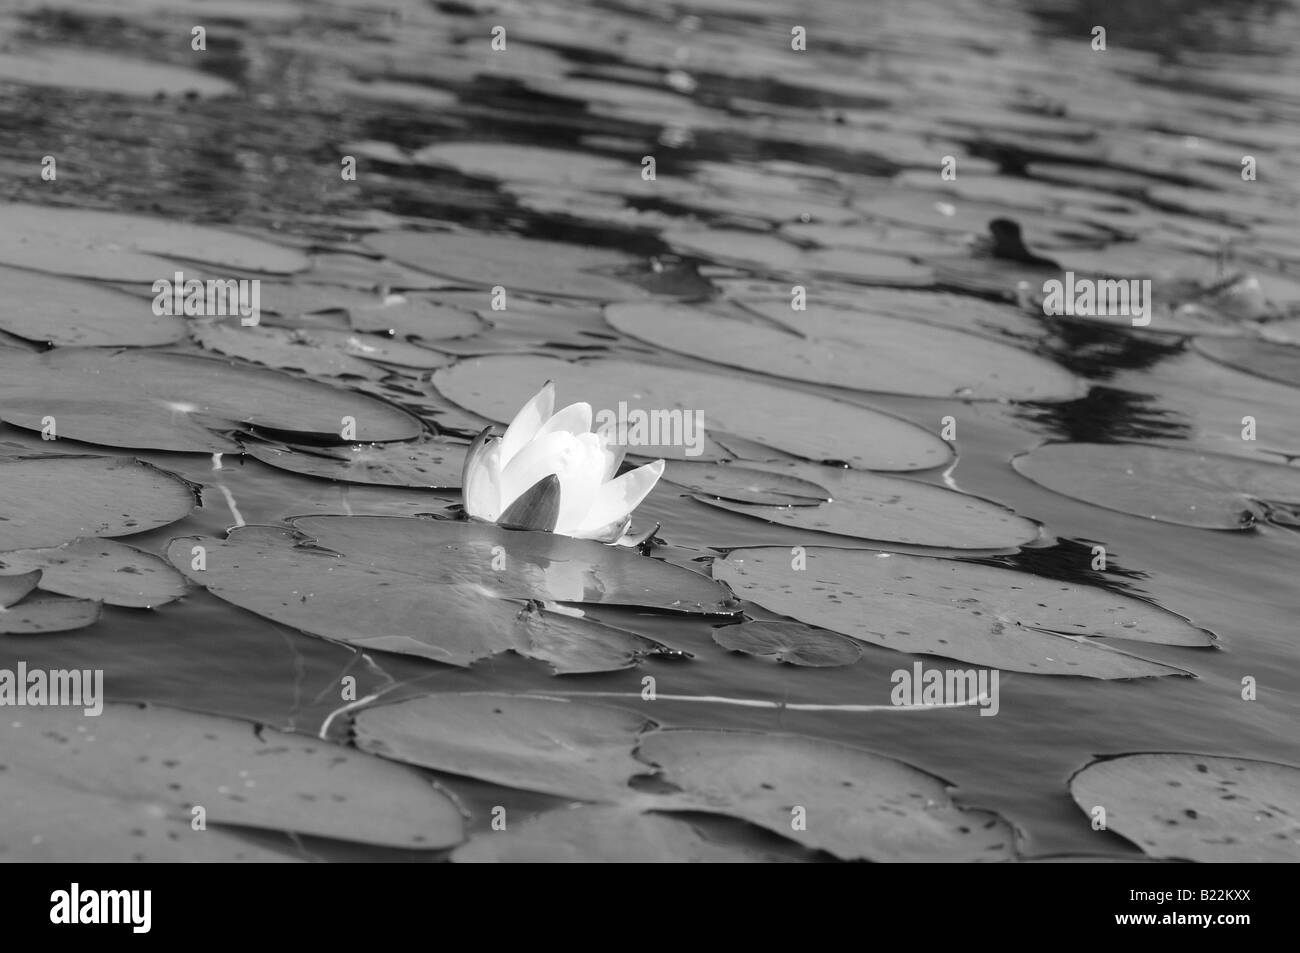 Photographie en noir et blanc d'un nénuphar et de nénuphars flottant délicatement sur les eaux calmes d'un petit étang ou lac. Banque D'Images